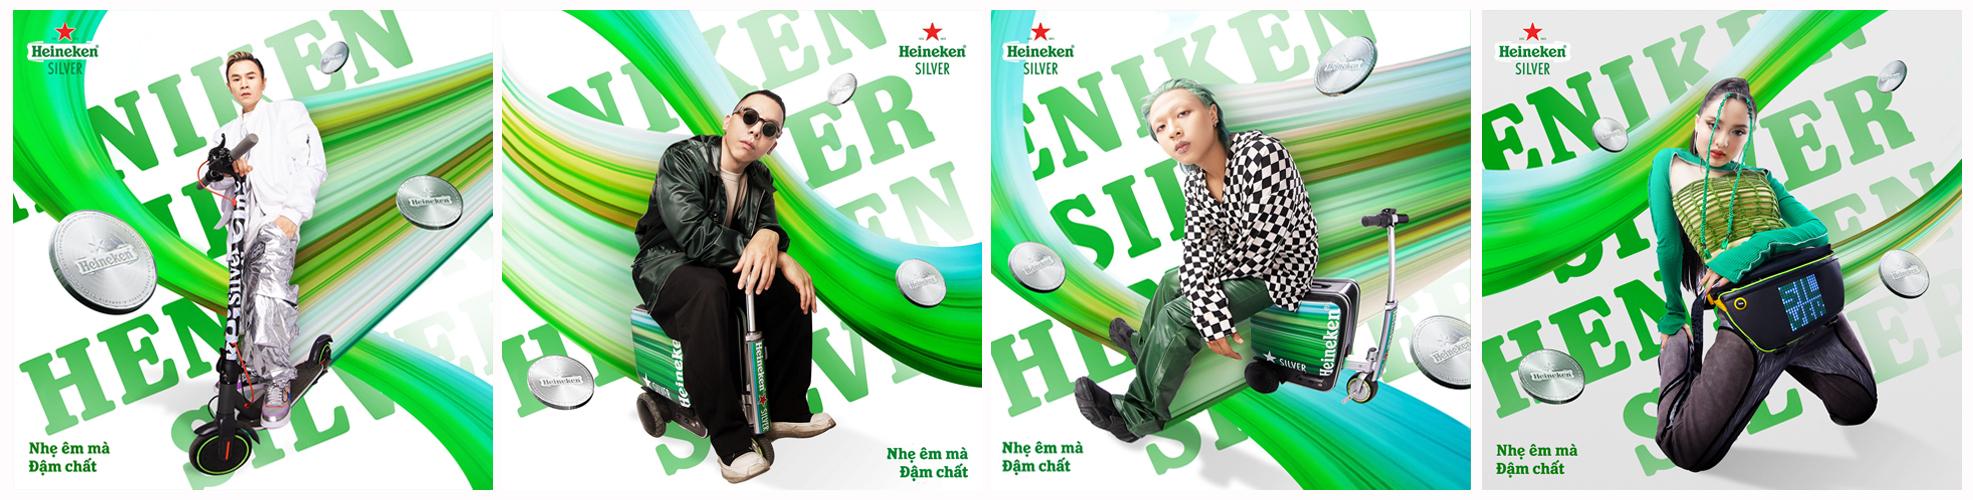 Hành trình người trẻ mở lối cuộc vui thời thượng cùng Heineken Silver - Ảnh 4.